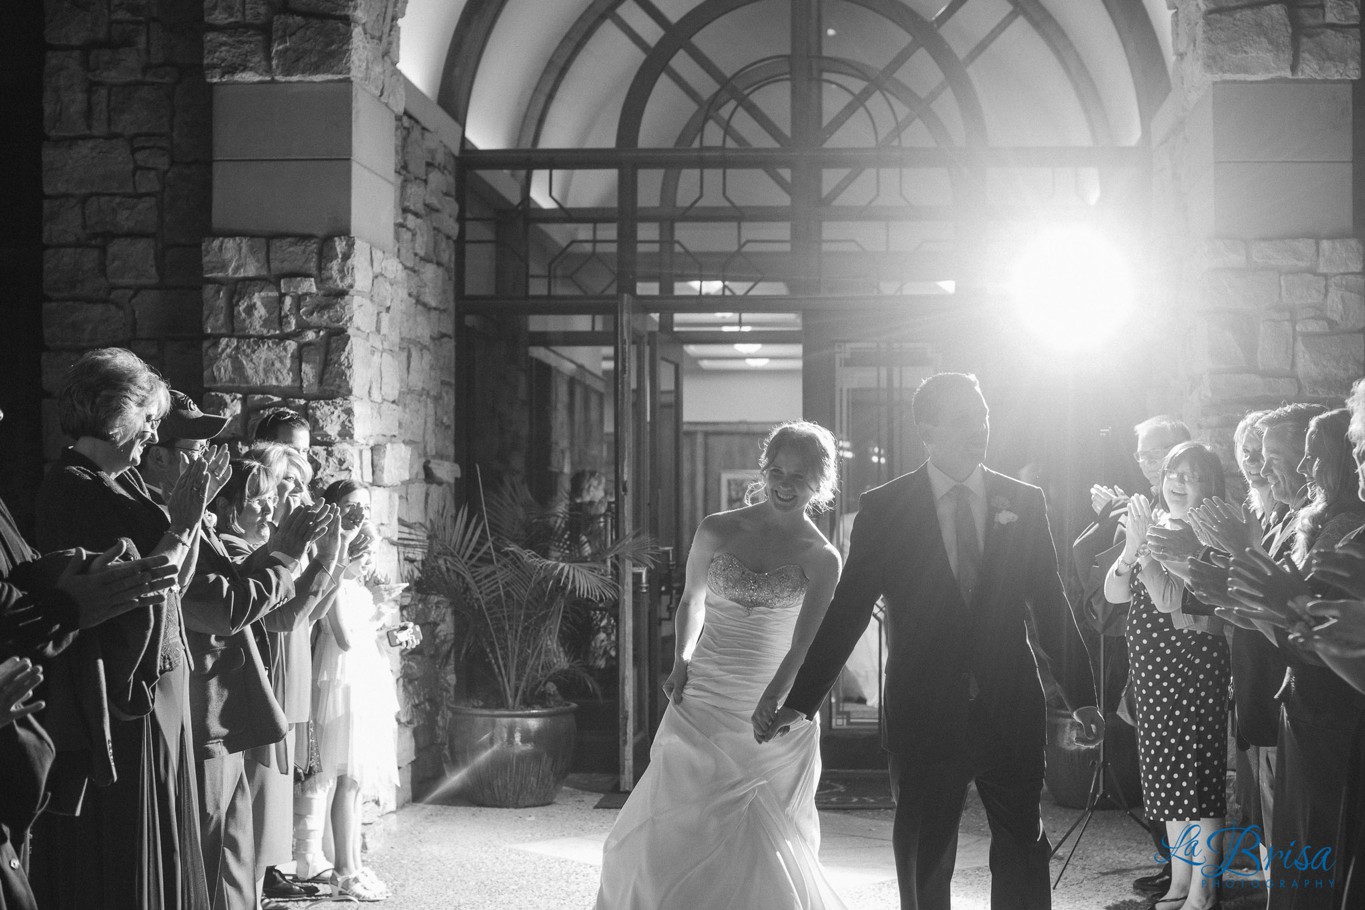 Loch Lloyd Country Club Wedding Photography Belton La Brisa Photography